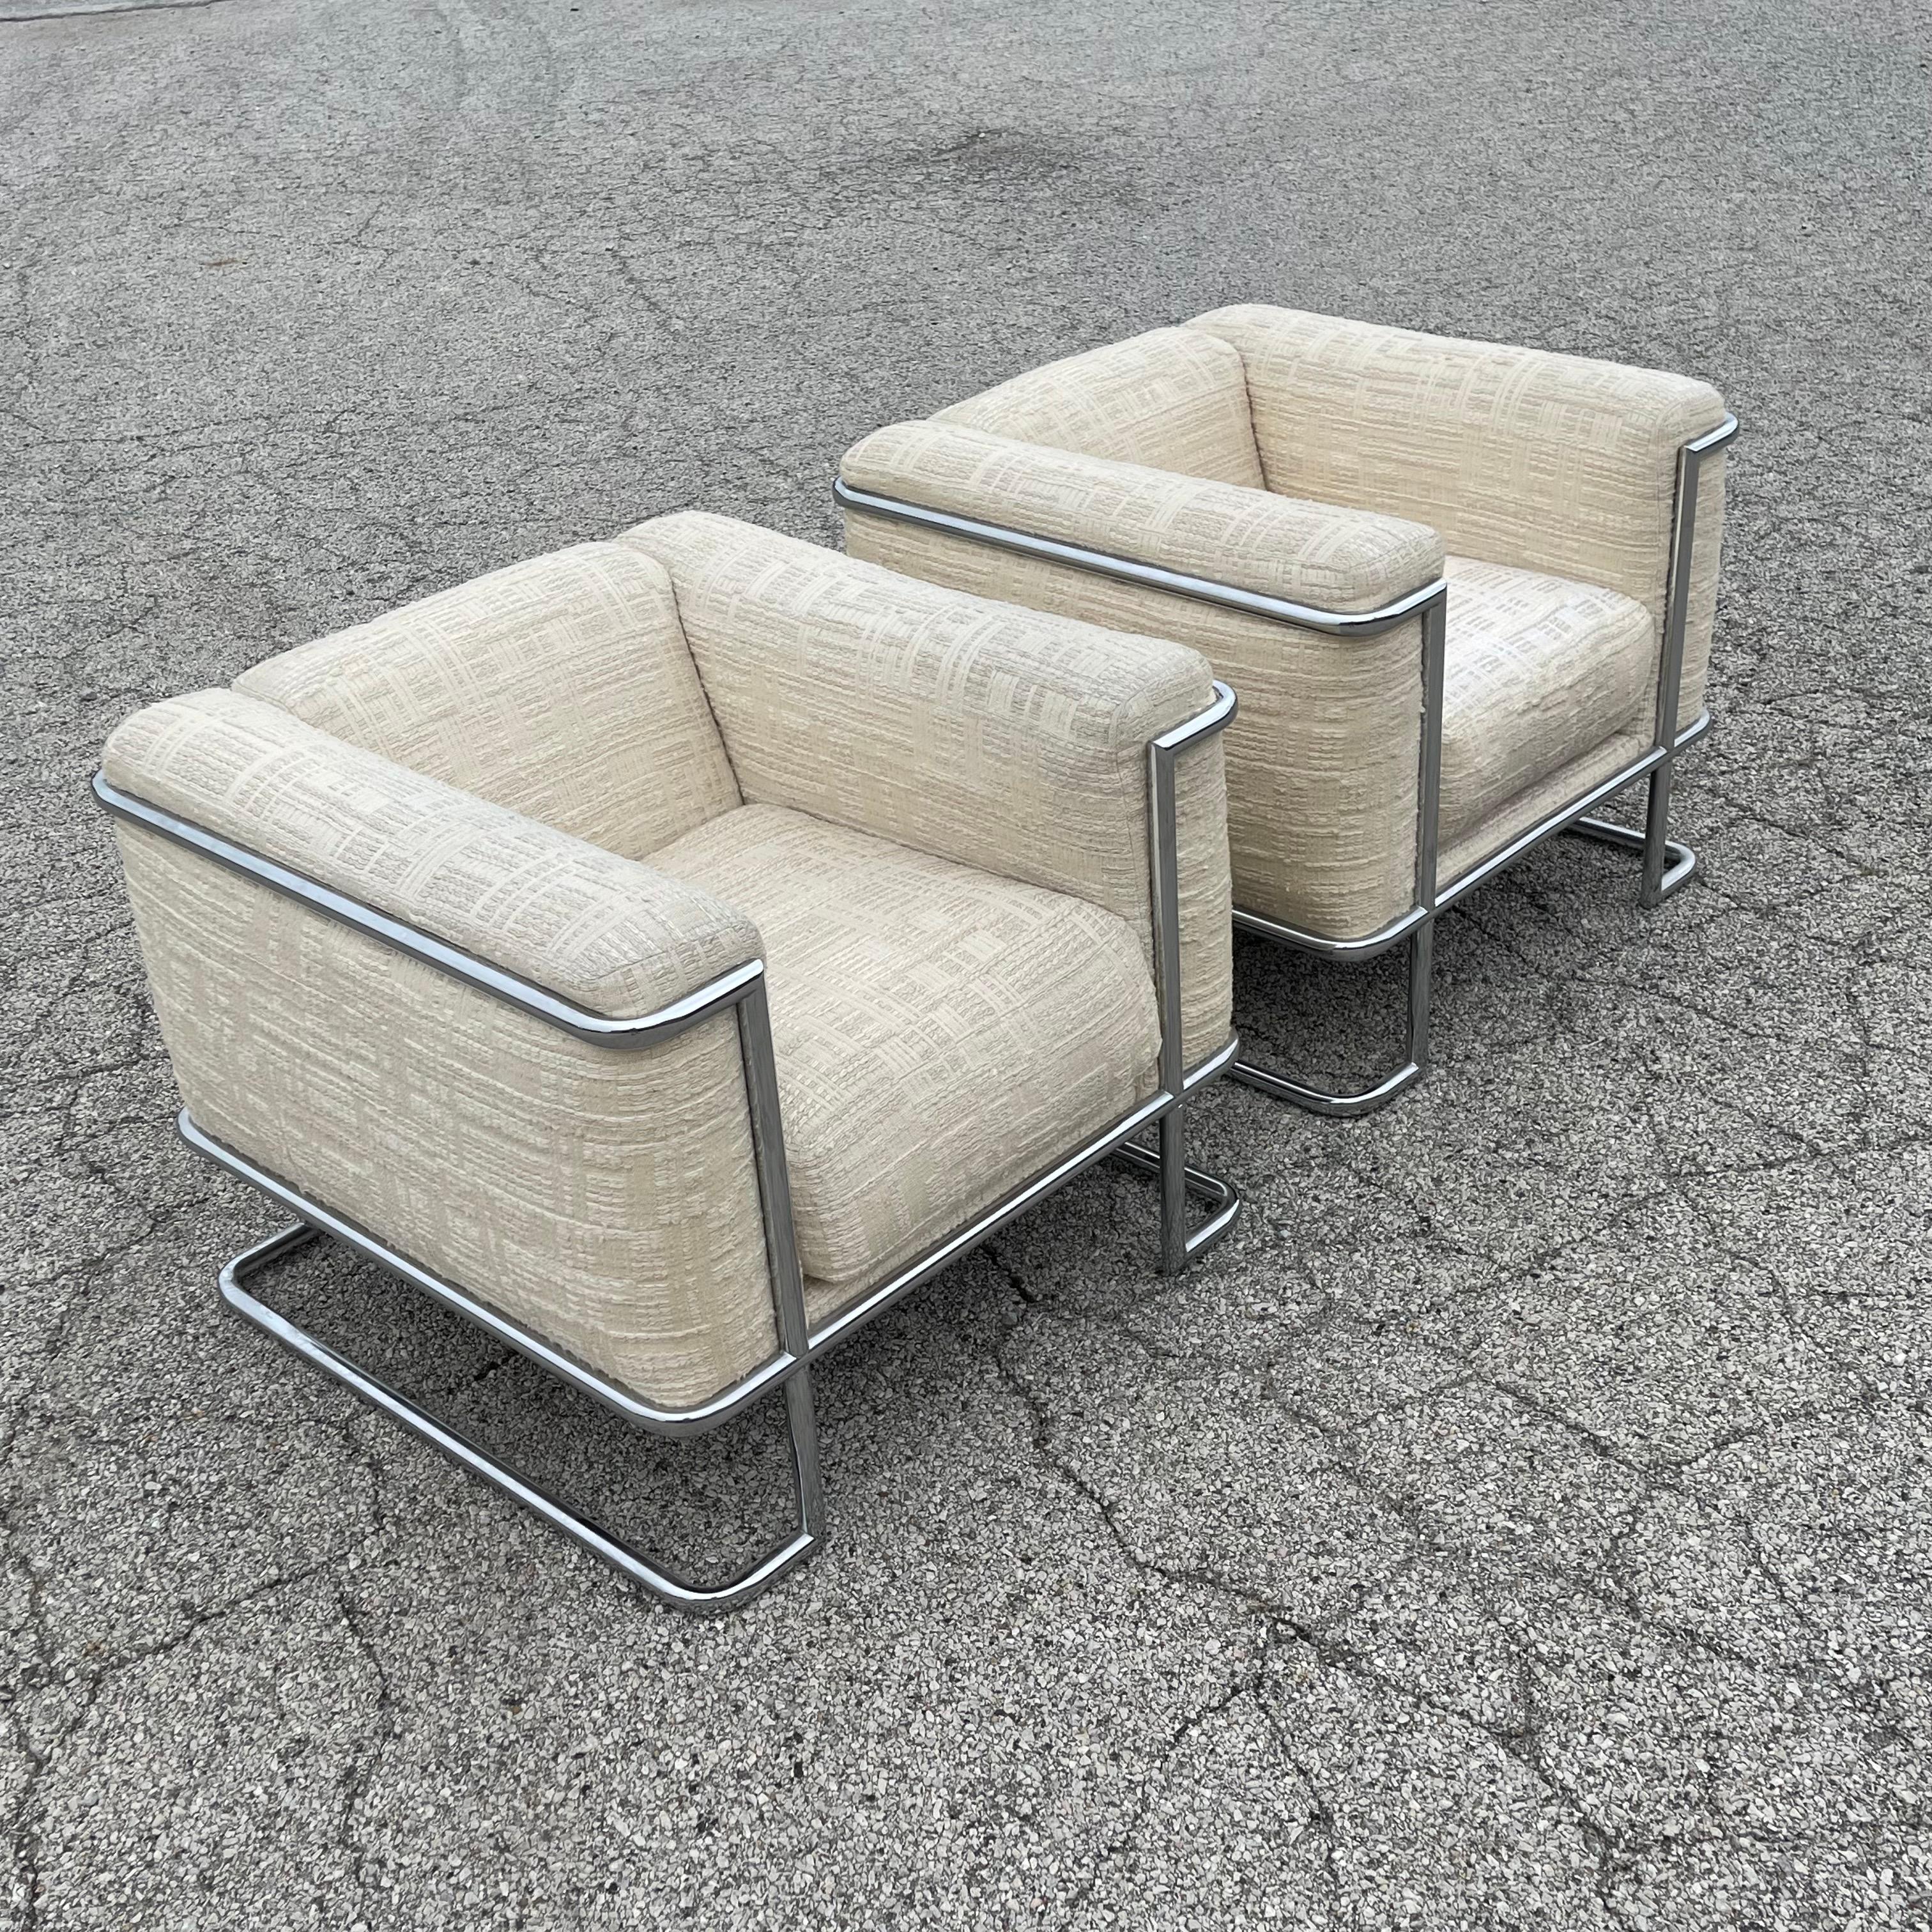 Diese auffallend schönen und recht seltenen Cube Lounge Chairs wurden von John Mascheroni für Swaim Originals entworfen und haben Außenrahmen aus verchromtem Stahlrohr. Das einzigartige Design bezieht sich auf Le Corbusiers 